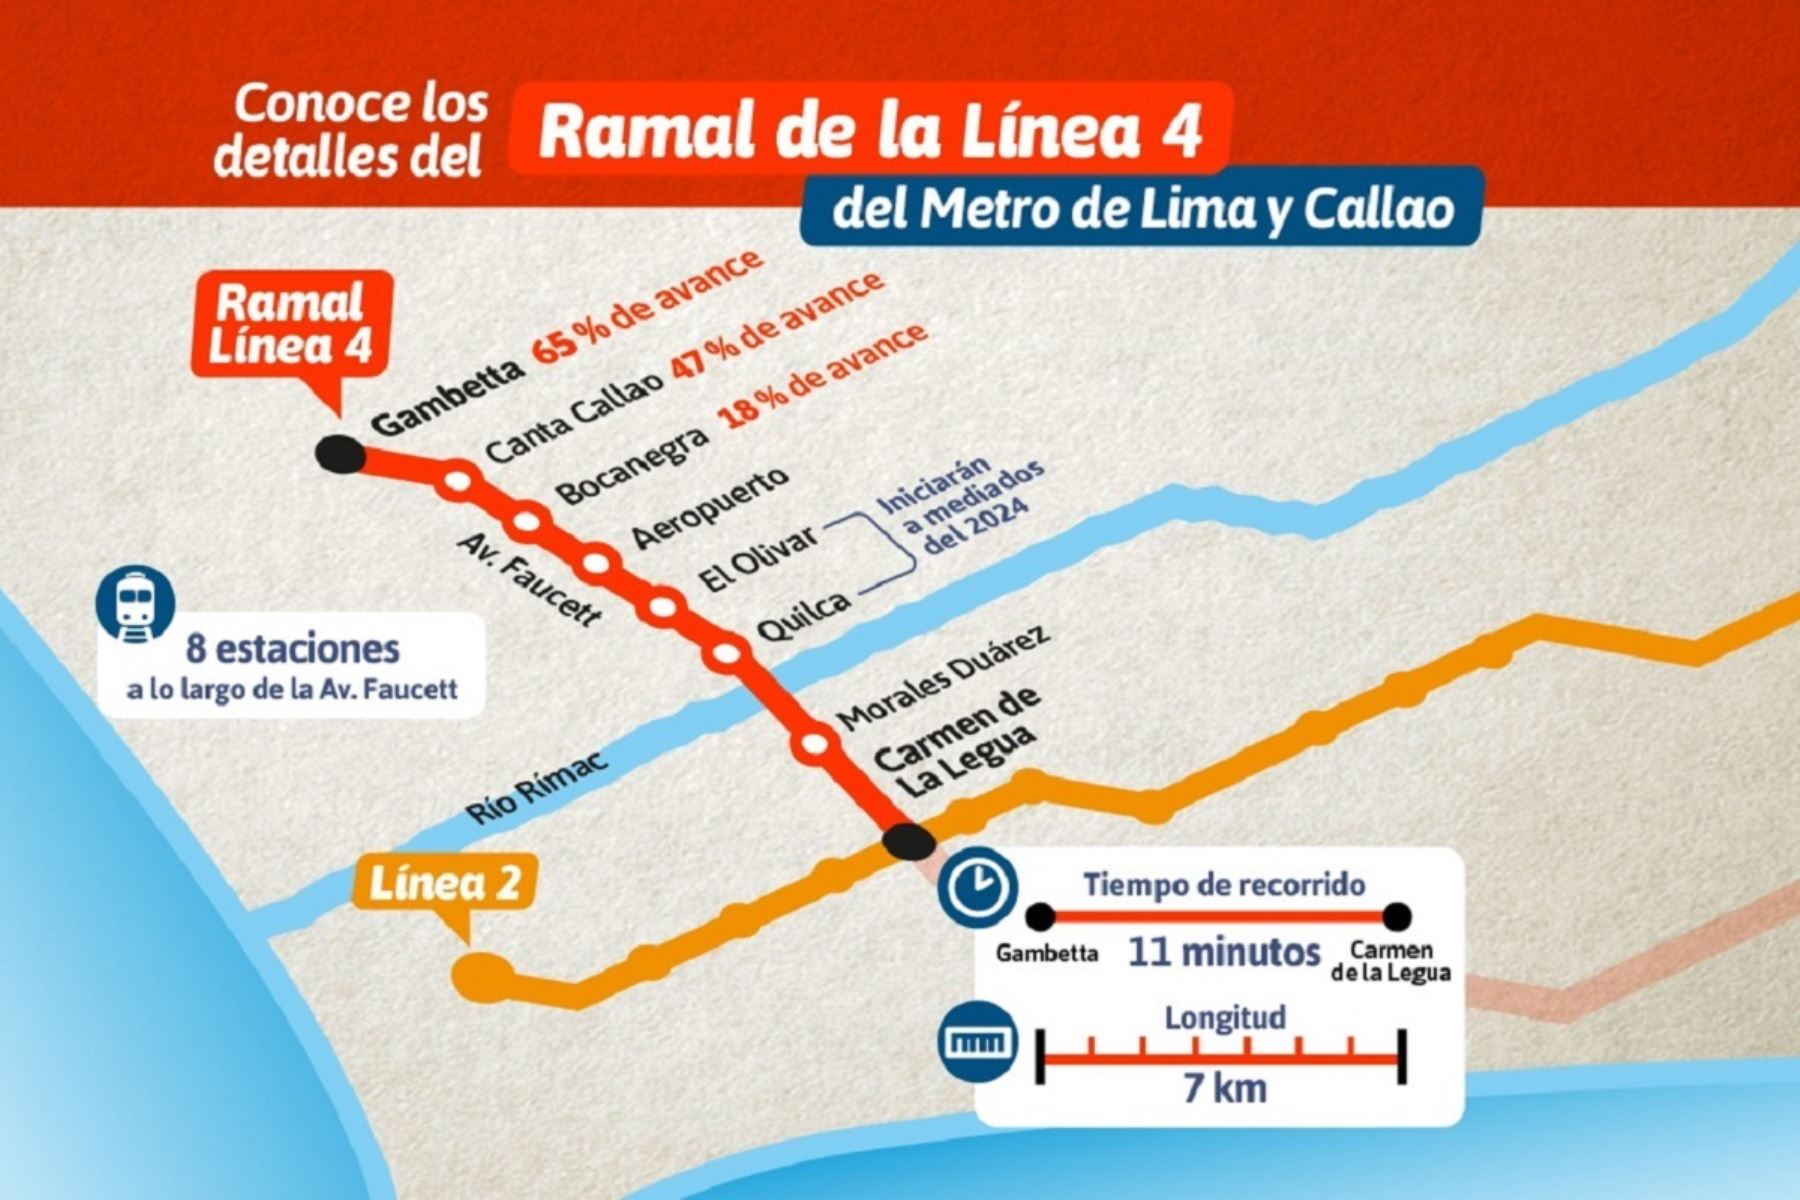 Ramal de la Línea 4 del Metro de Lima. Fuente: MTC.